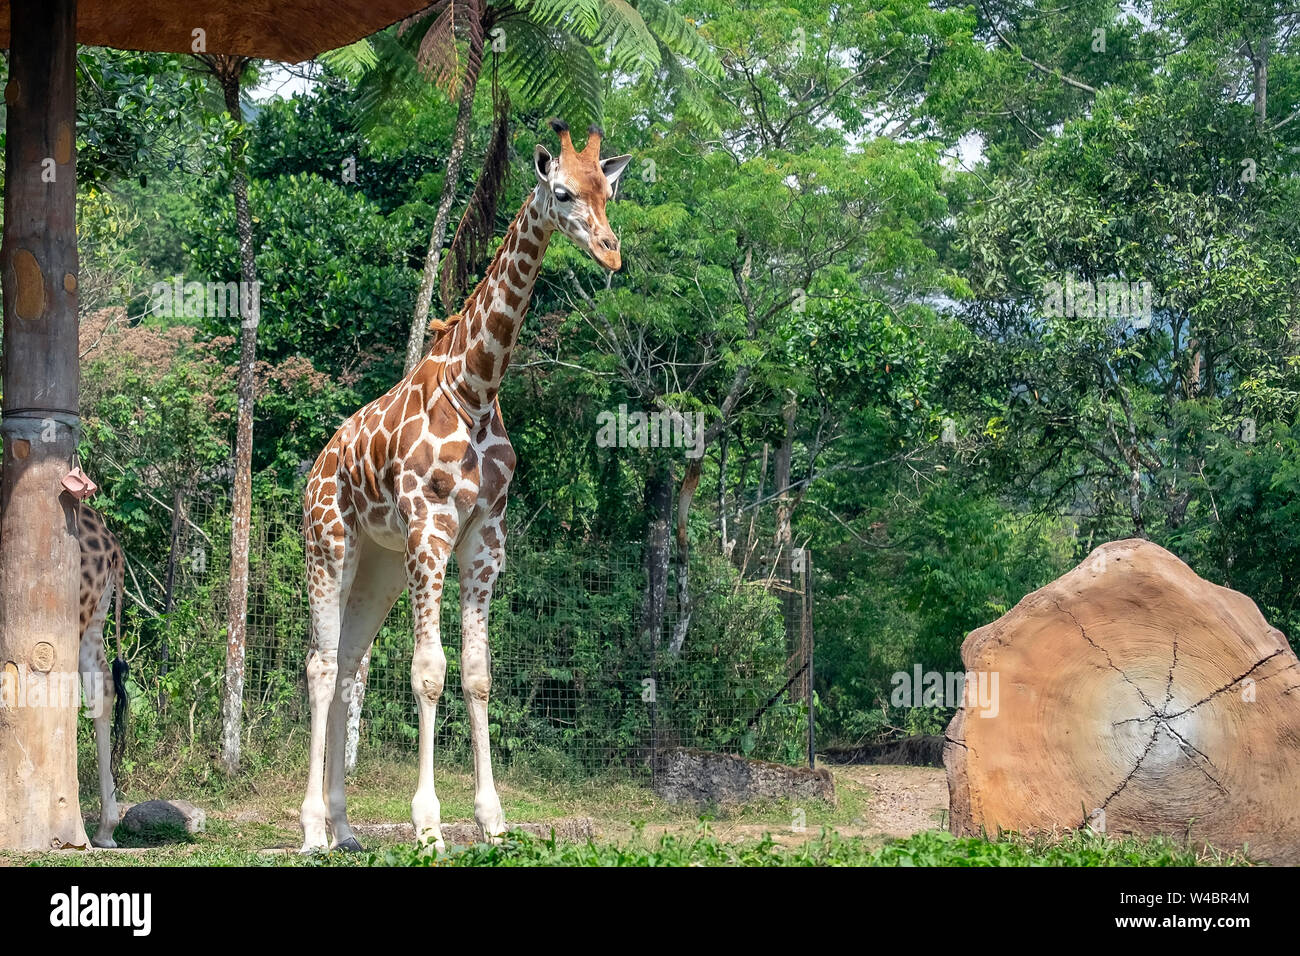 Jirafa (Giraffa) es un africano más puntera de mamíferos ungulados vivos, el más alto y el más grande de los animales terrestres rumiantes. Foto de stock